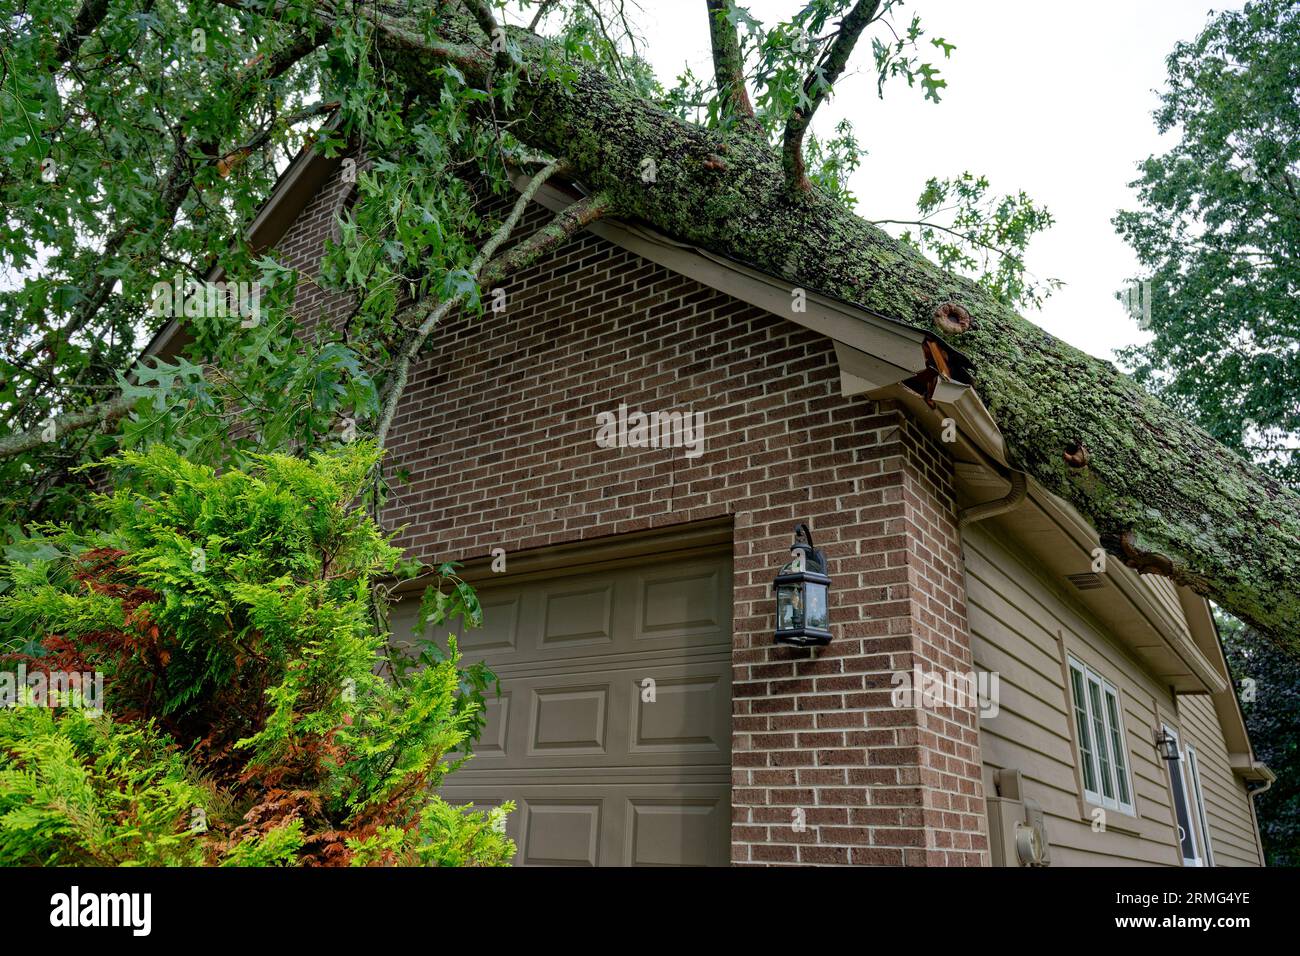 D'une micro-rafale ou des vents abrupts ont déraciné un chêne massif lors d'une mauvaise tempête tombant sur une maison sur la partie garage écrasant le toit et d'autres pa Banque D'Images